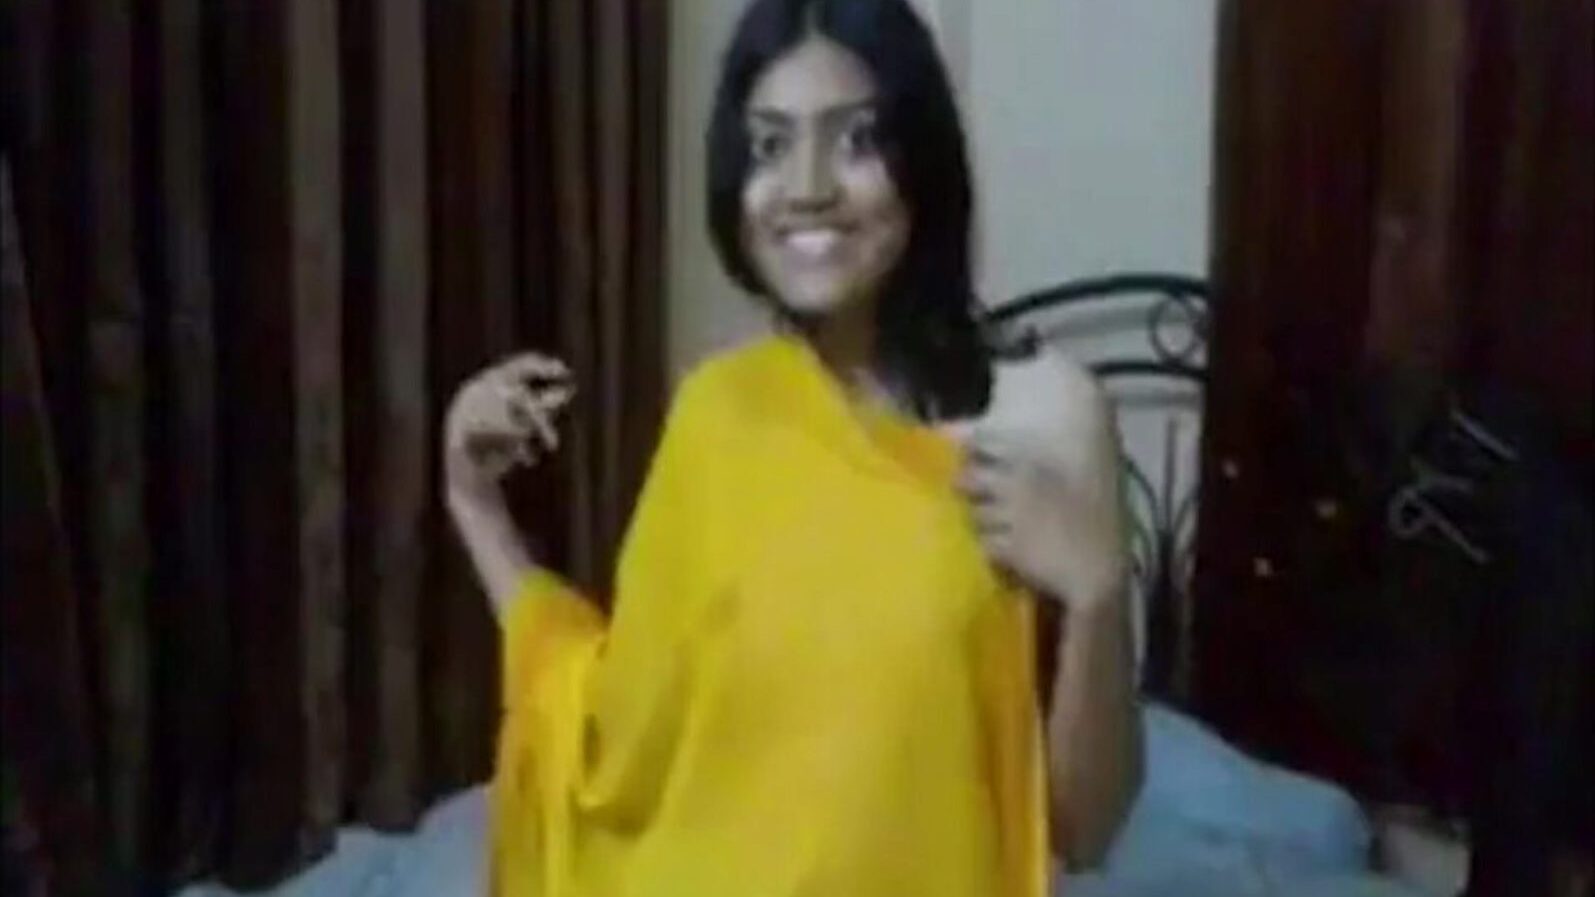 indyjska studentka pieprzy się z przyrodnim bratem, porno 0c: xhamster oglądaj indyjski studentka pieprzy się z przyrodnim bratem odcinek na xHamster, ogromna strona internetowa HD fuckfest tube z mnóstwem darmowych azjatyckich ruchów online i robienia loda porno